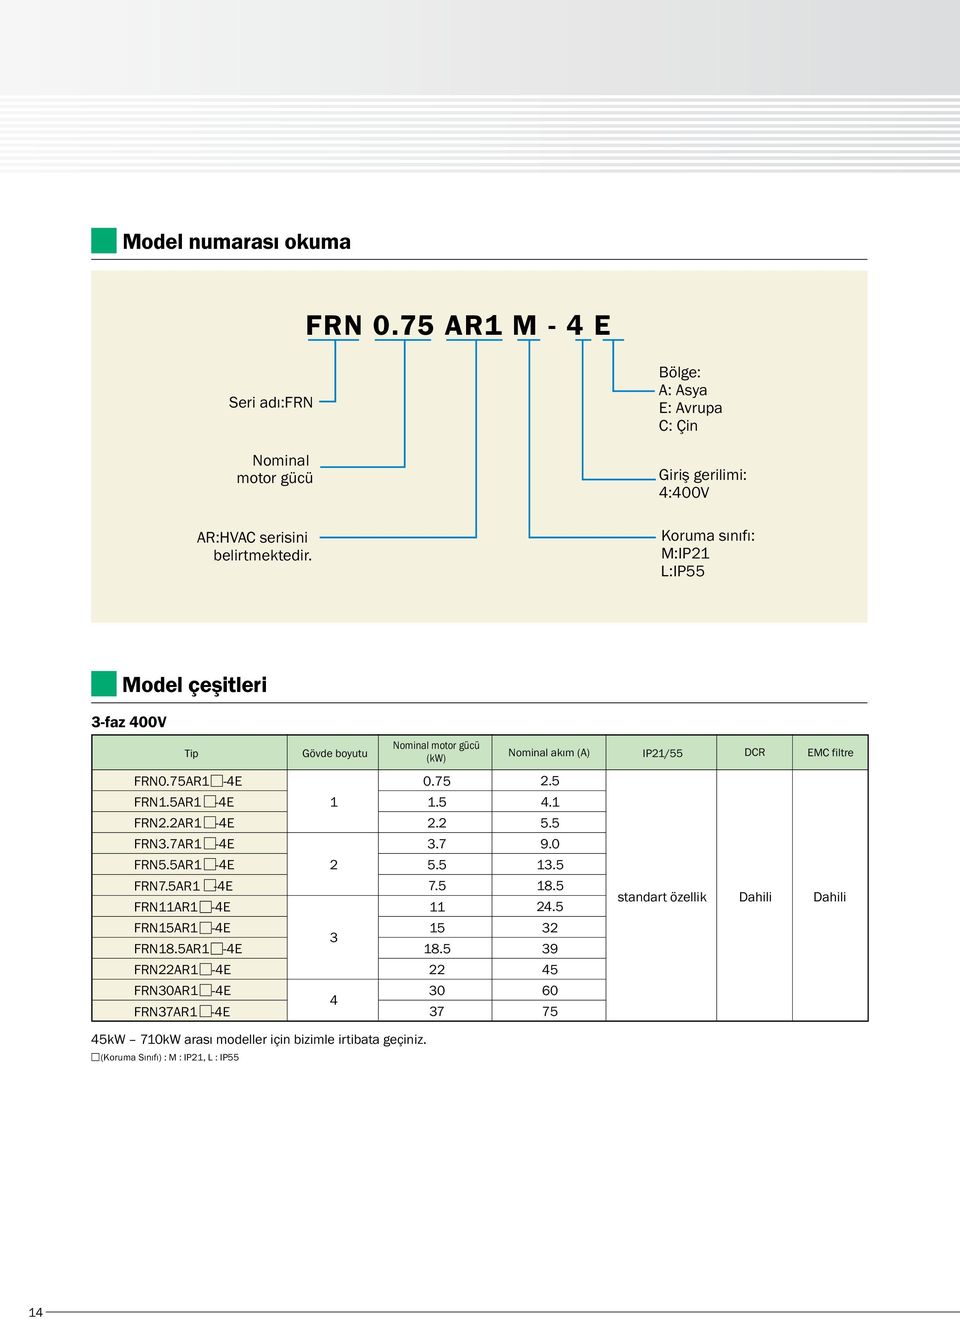 (A) IP21/55 DCR EMC filtre FRN0.75AR1-4E FRN1.5AR1-4E FRN2.2AR1-4E FRN3.7AR1-4E FRN5.5AR1-4E FRN7.5AR1-4E FRNAR1-4E FRN15AR1-4E FRN18.